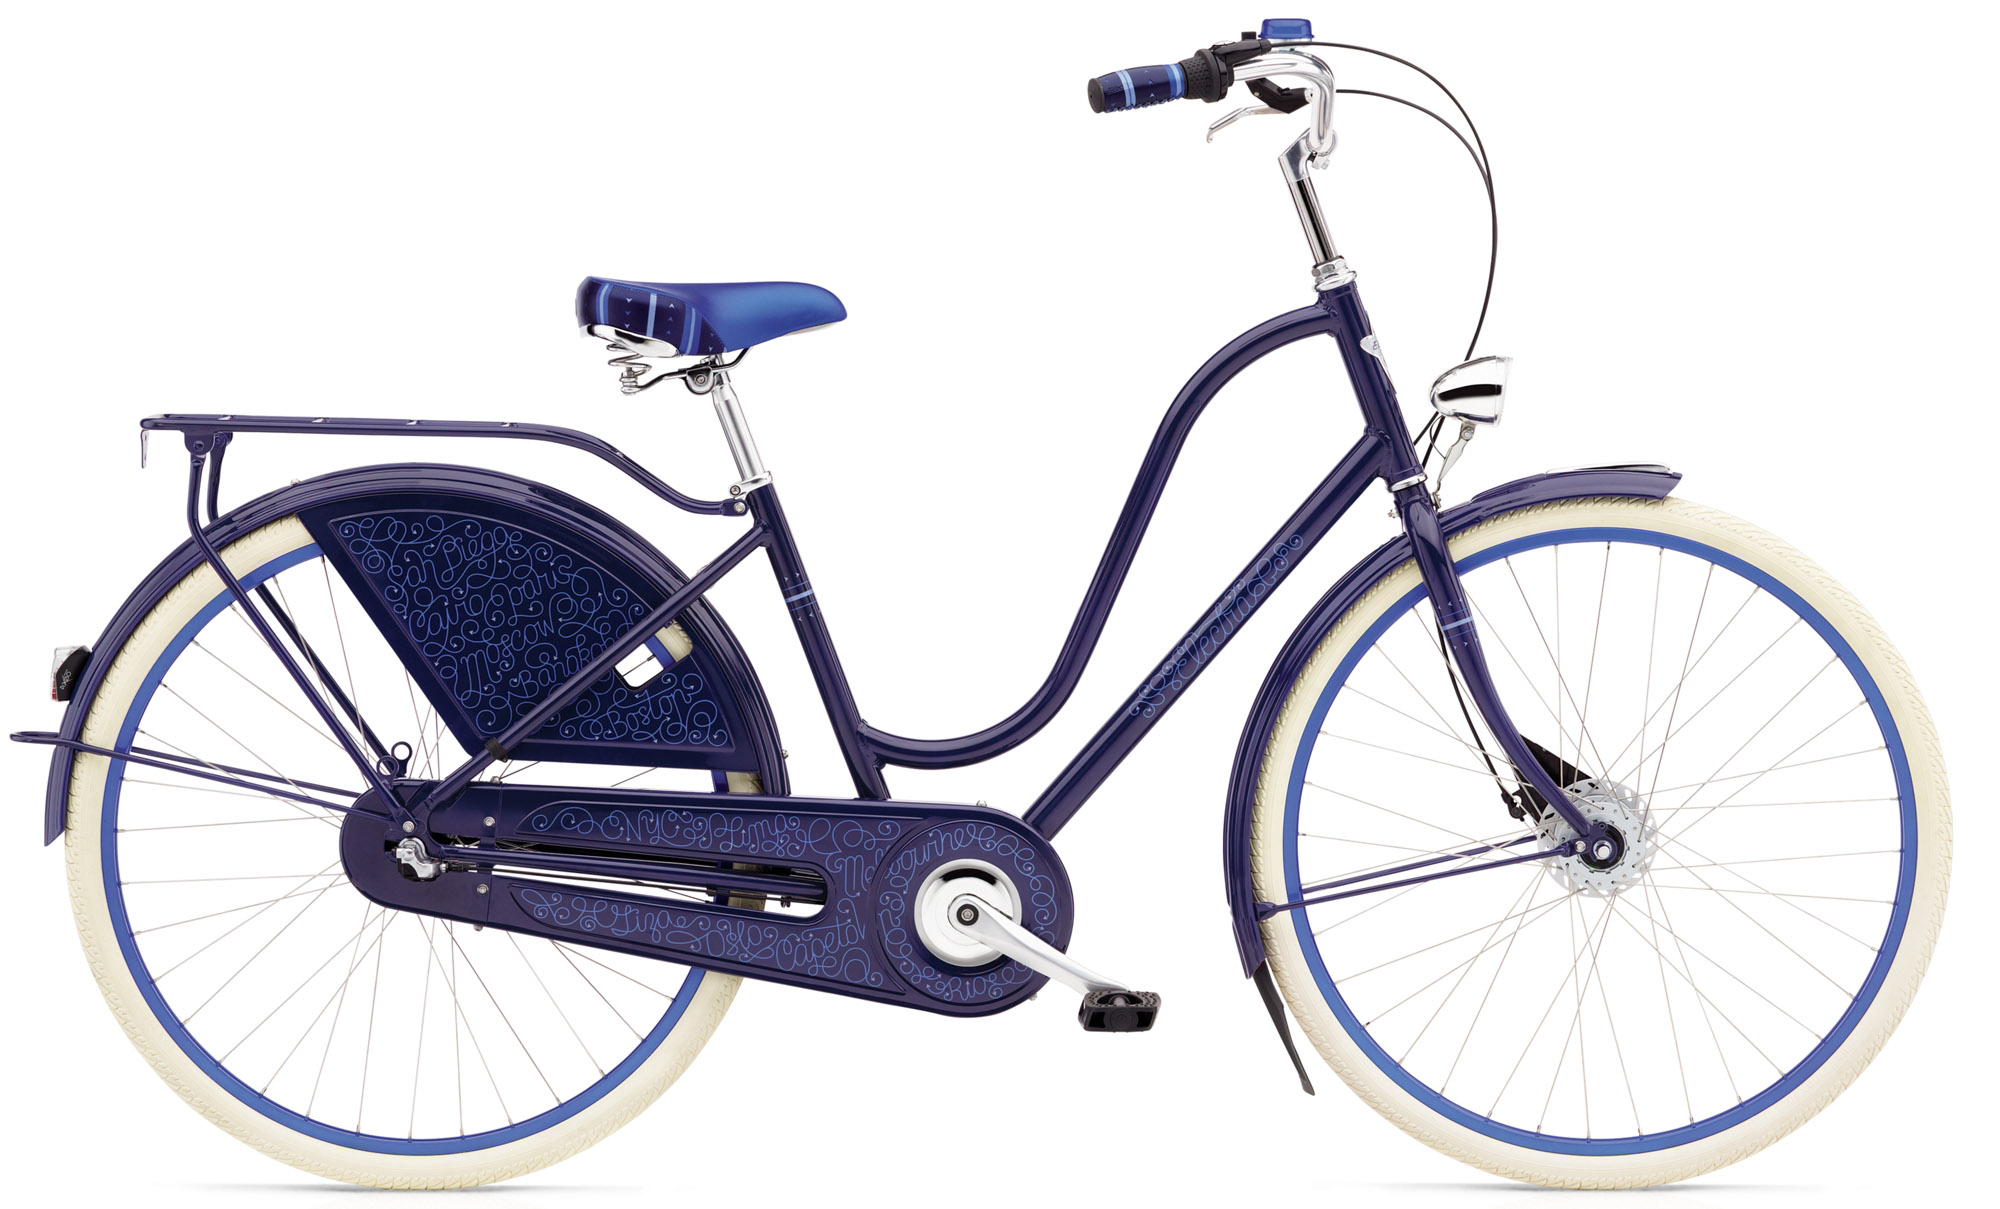  Отзывы о Женском велосипеде Electra Amsterdam Fashion 3i Ladies 2020